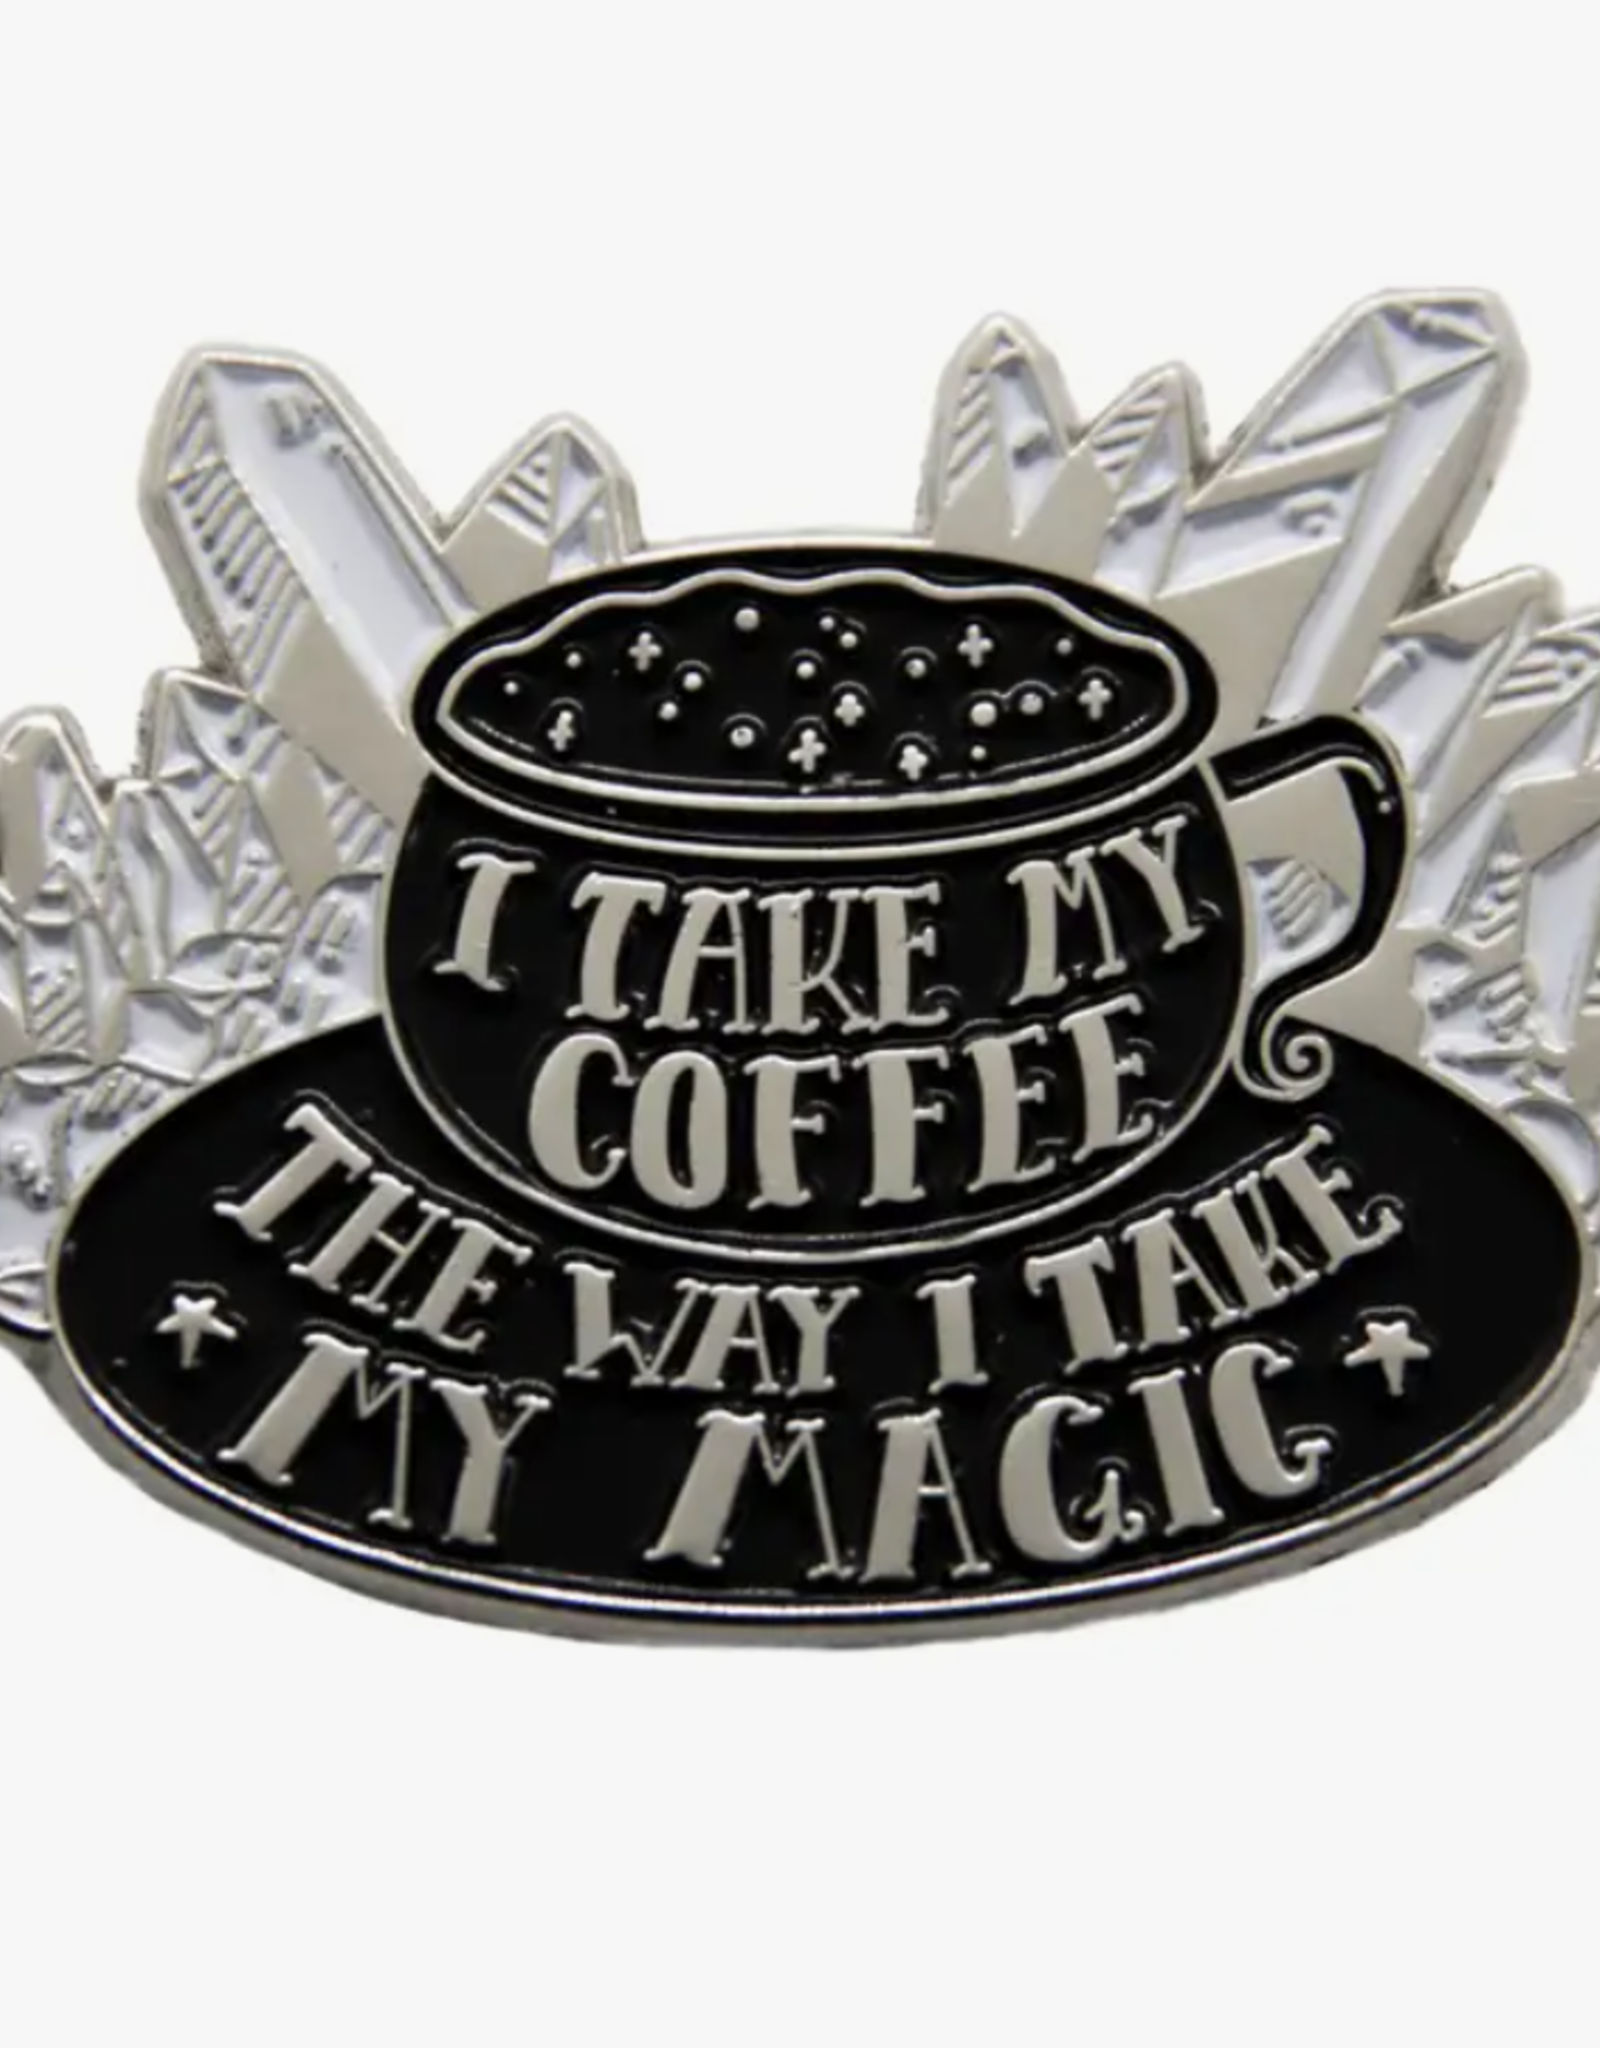 "I Take My Coffee the Way I Take My Magic" Witchy Enamel Pin